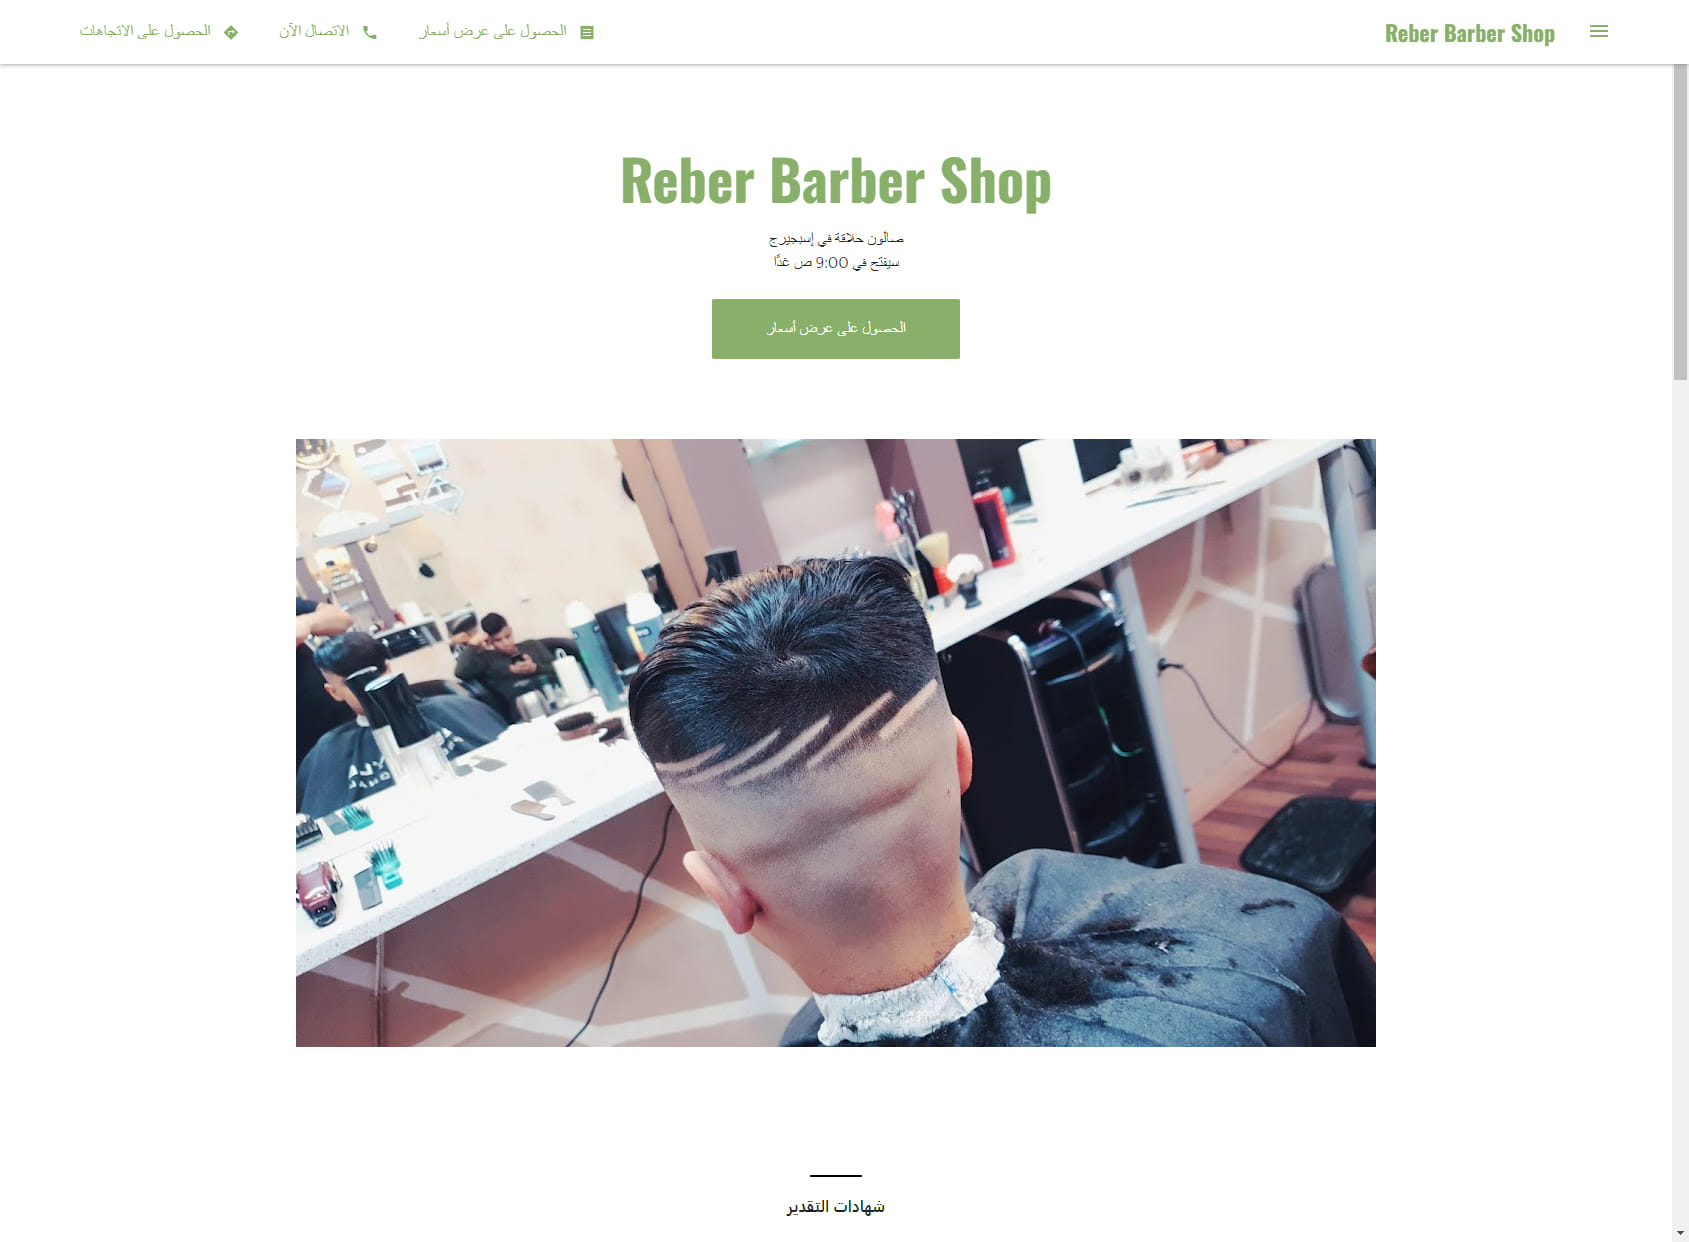 Reber Barber Shop